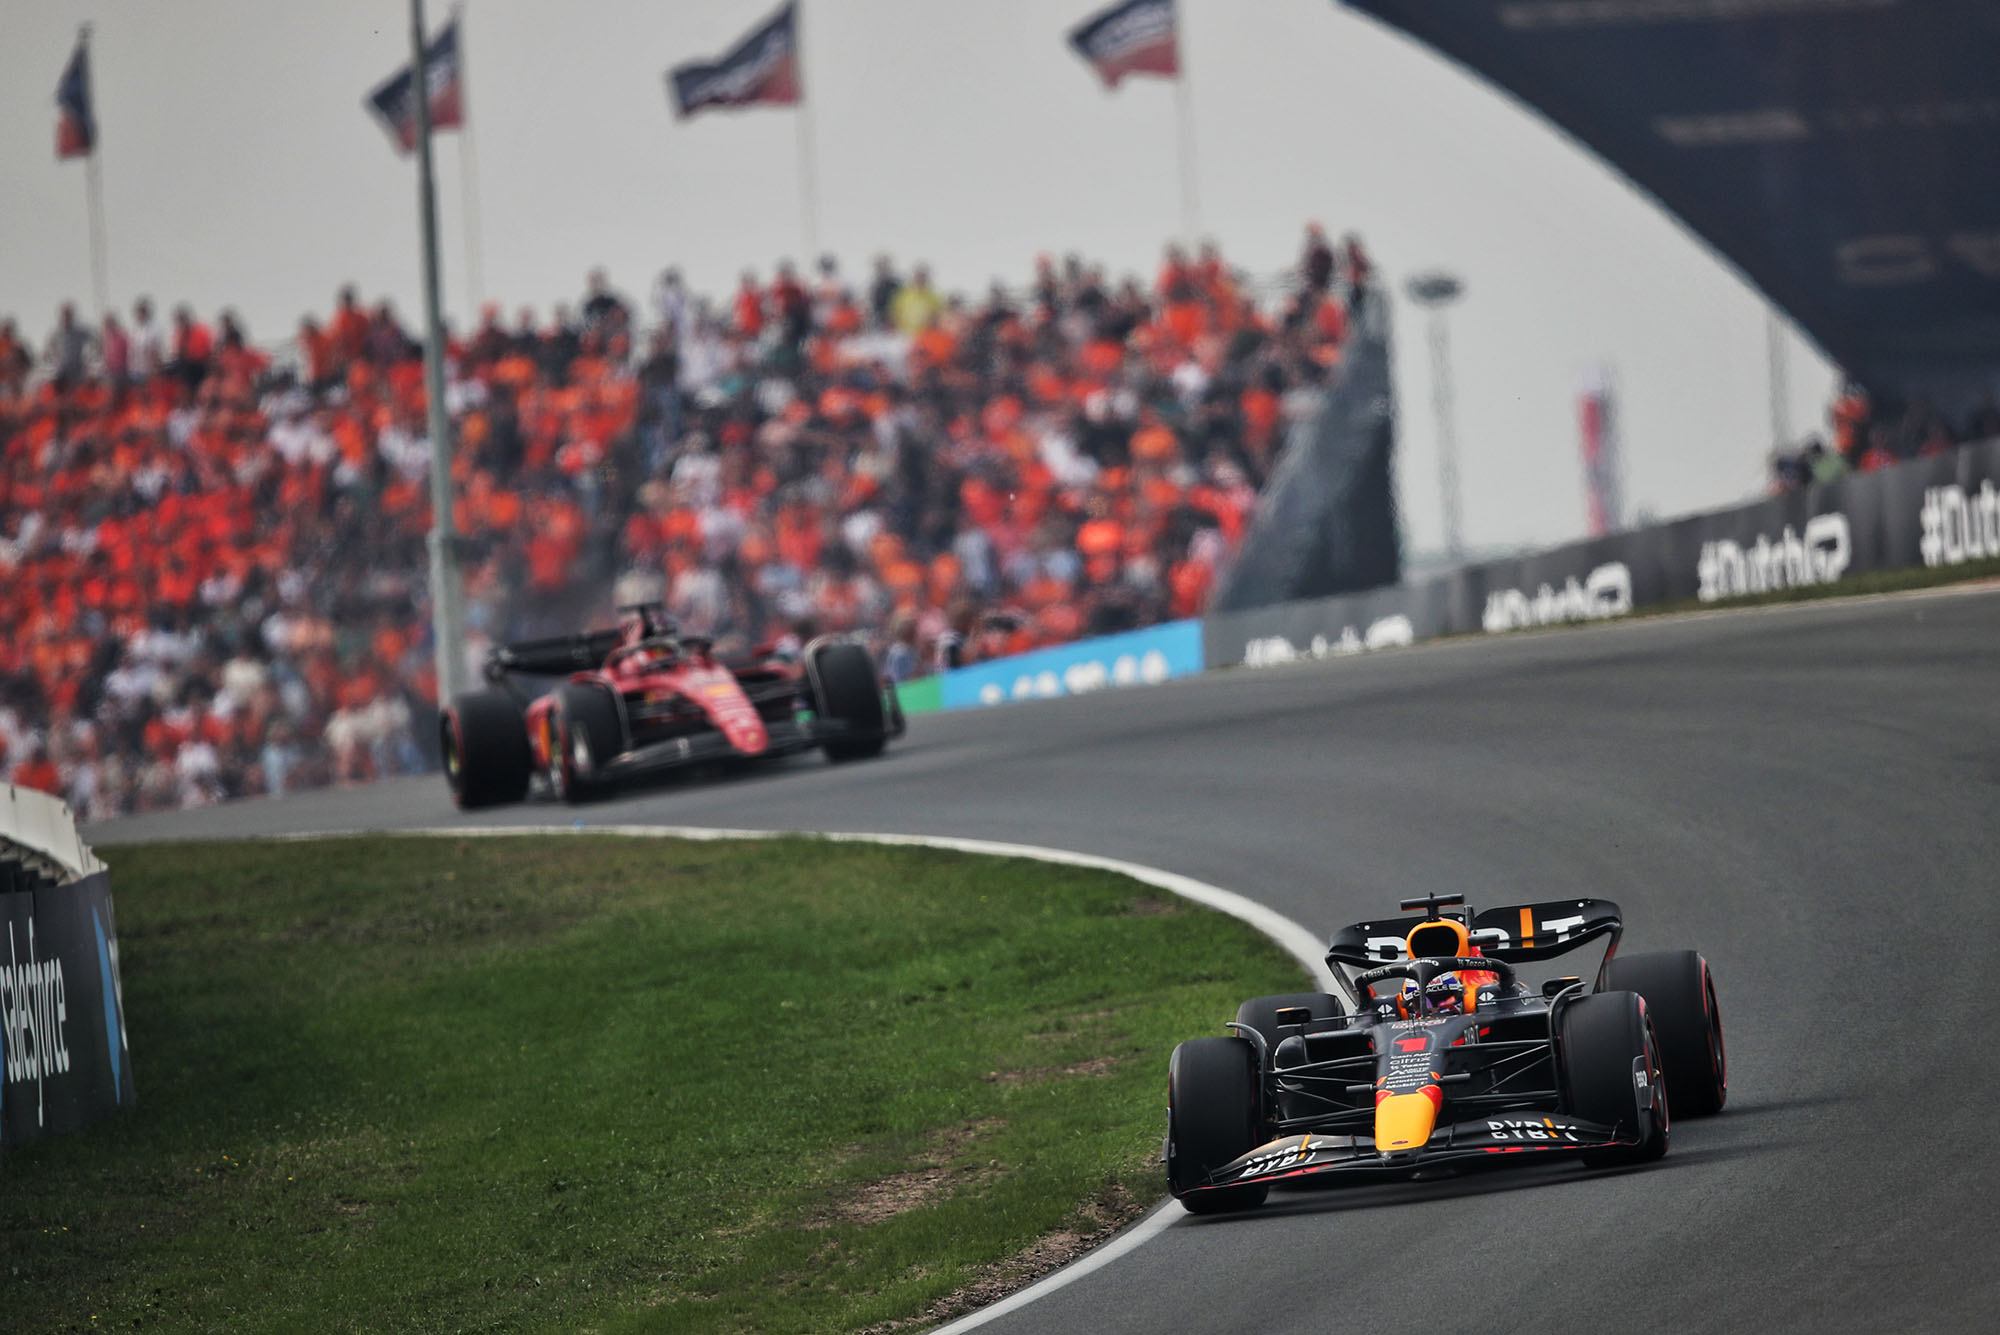 Campionat del món de Fórmula 1 de curses de motor Gran Premi d'Holanda Dia de la cursa Zandvoort, Països Baixos